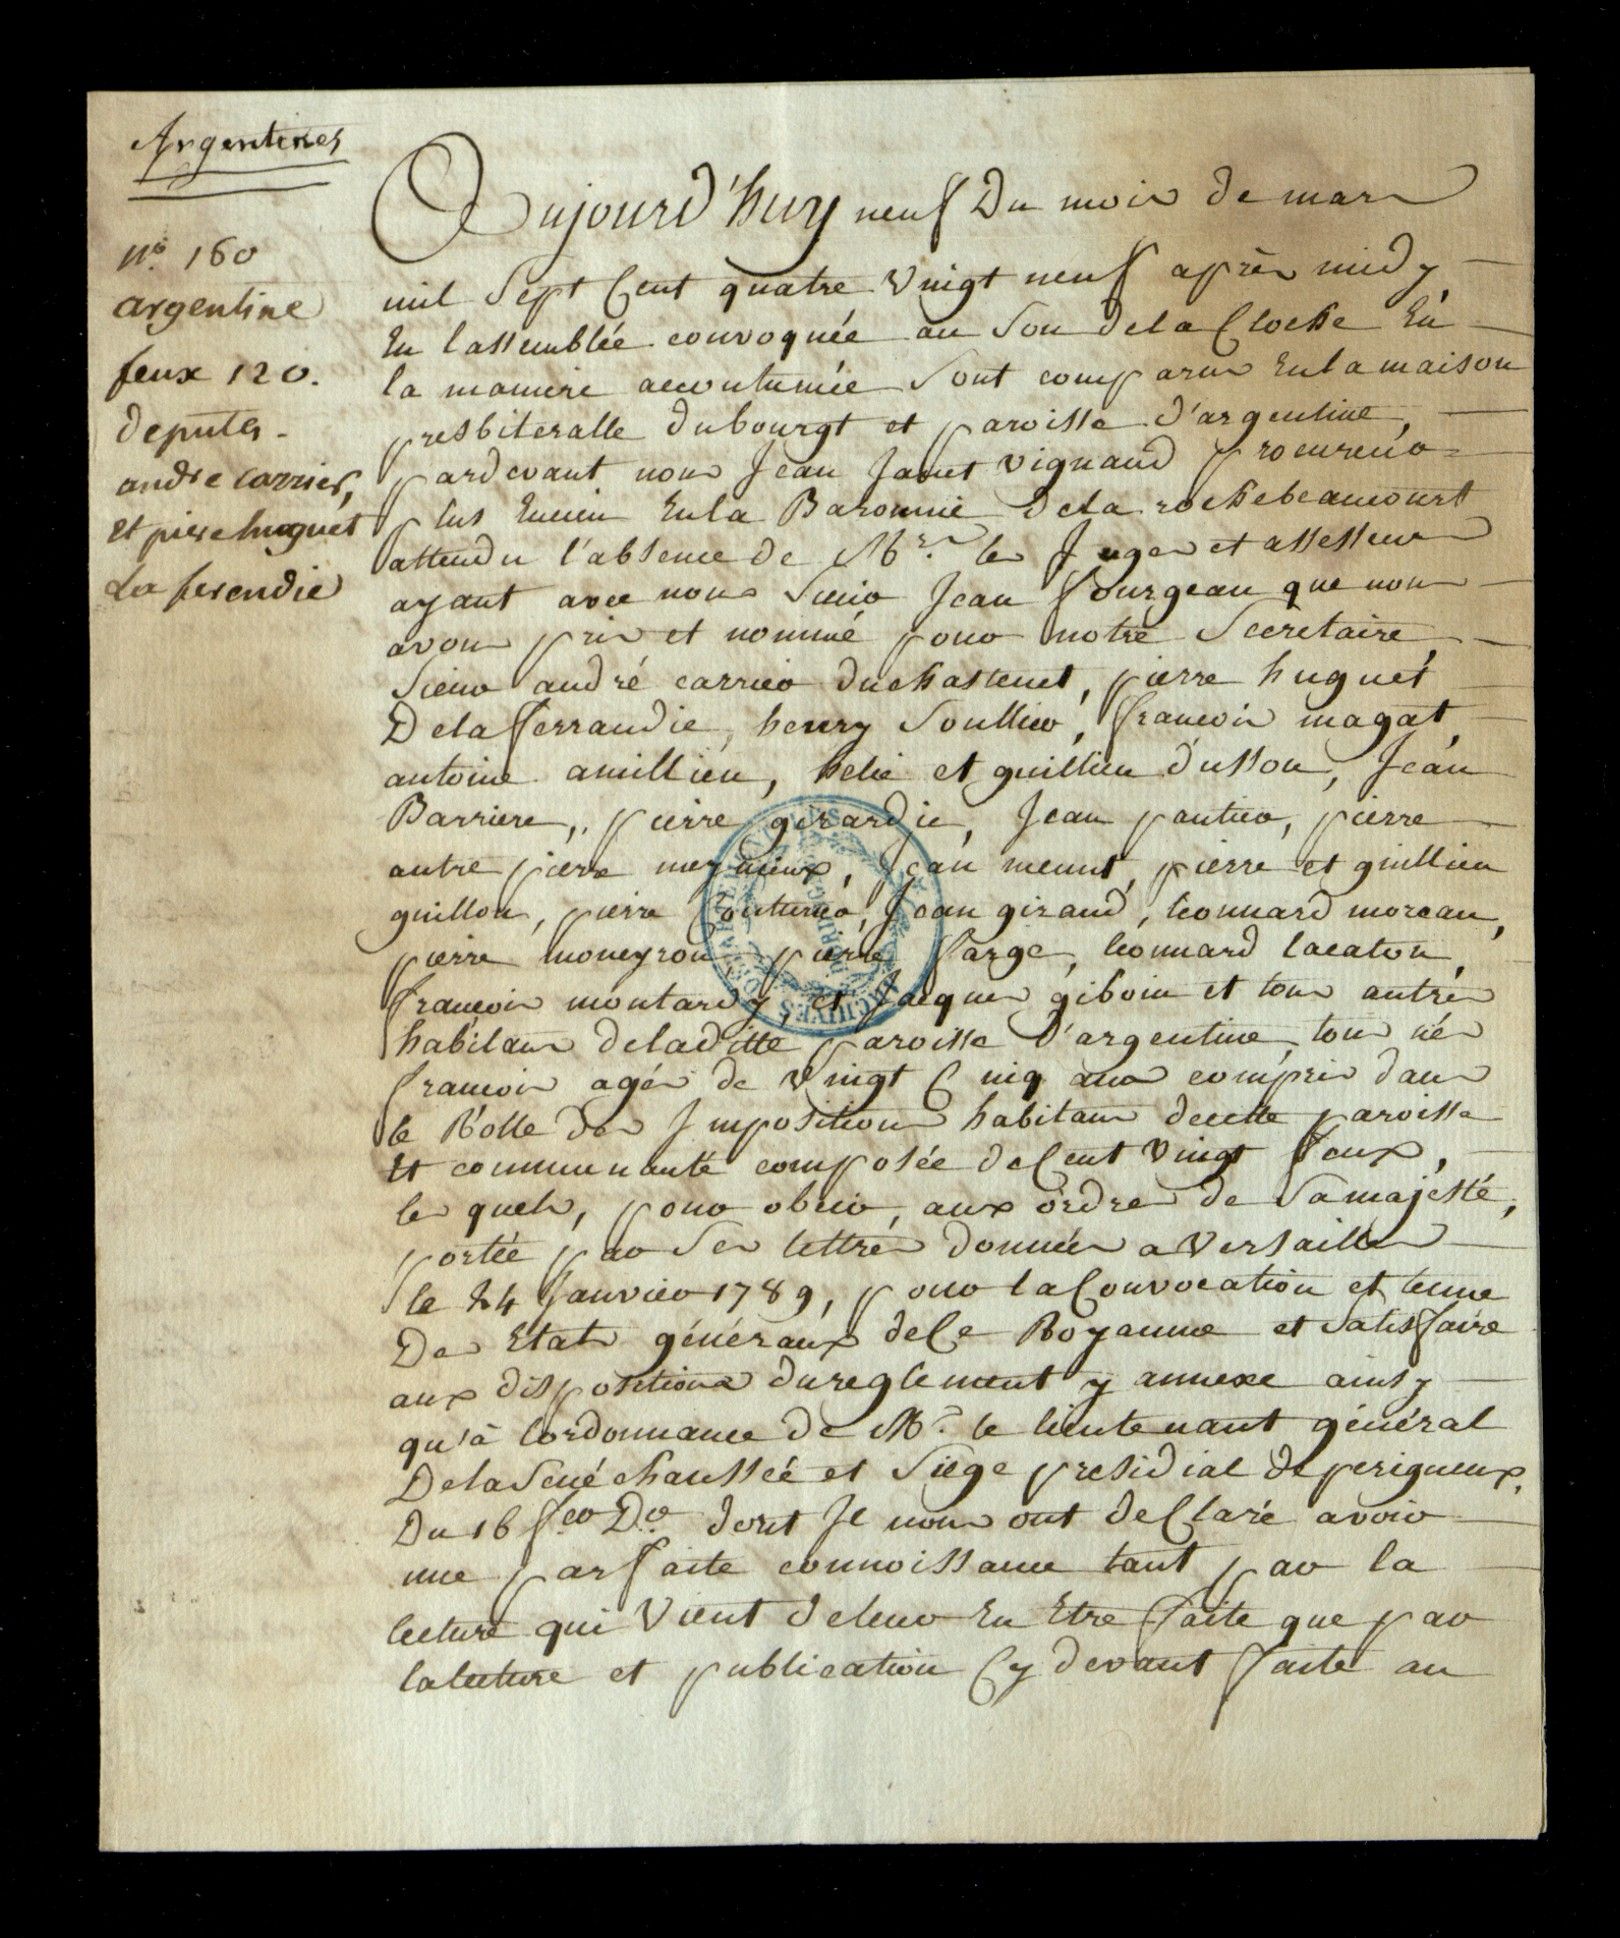 Extrait du cahier de doléances de la communauté d'habitants de Draguignan  (Arch. dép. Var 1 B 2466) - Archives départementales du Var